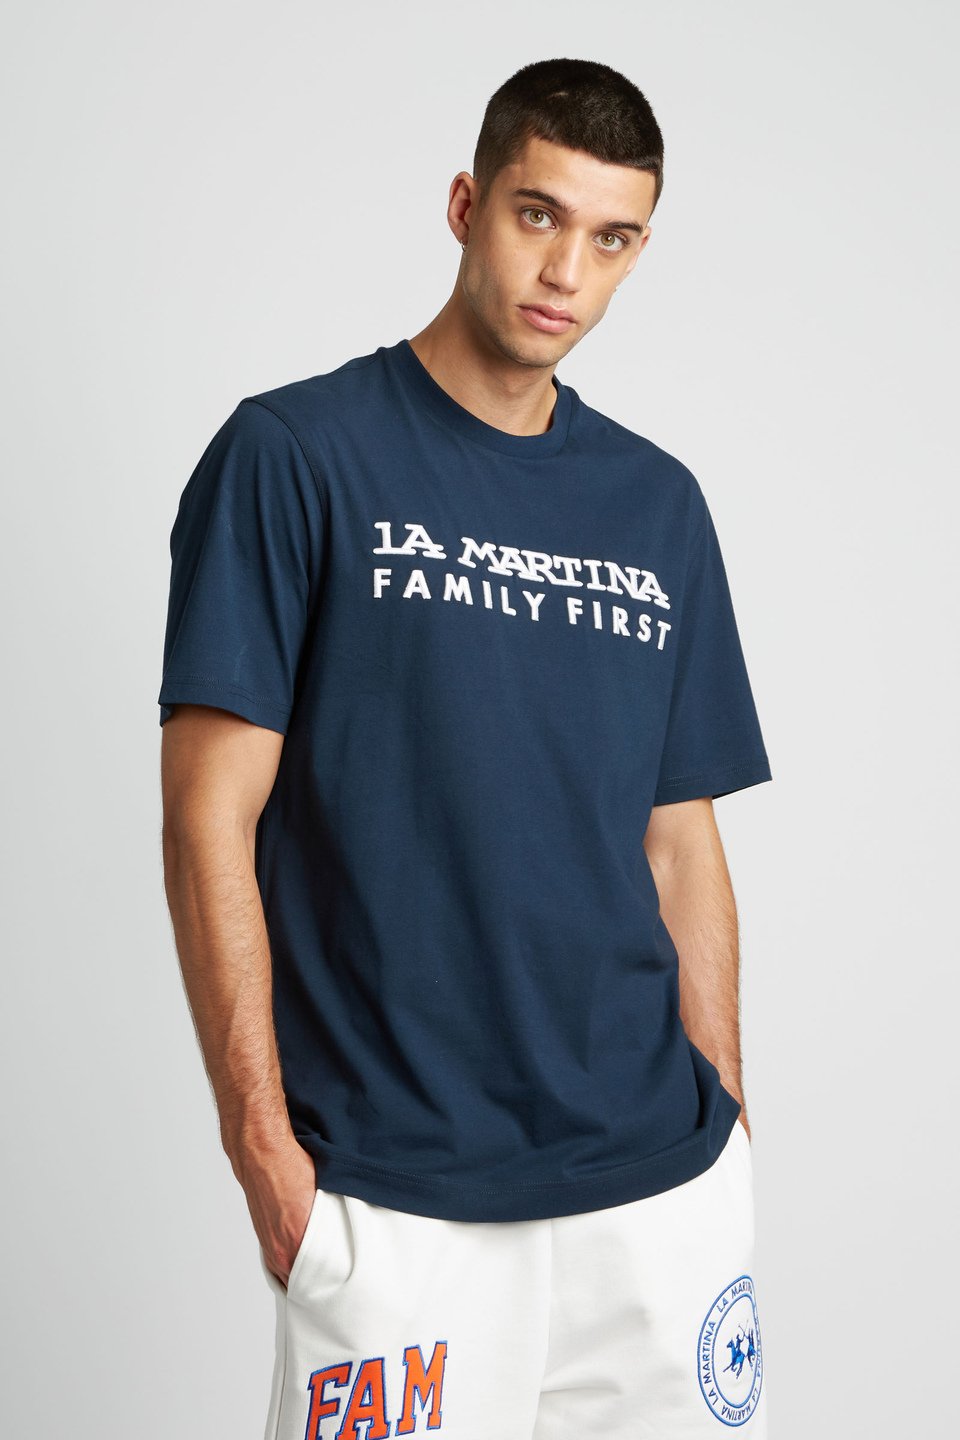 Herren-T-Shirt mit kurzem Arm aus 100 % Baumwolle, oversized | La Martina - Official Online Shop